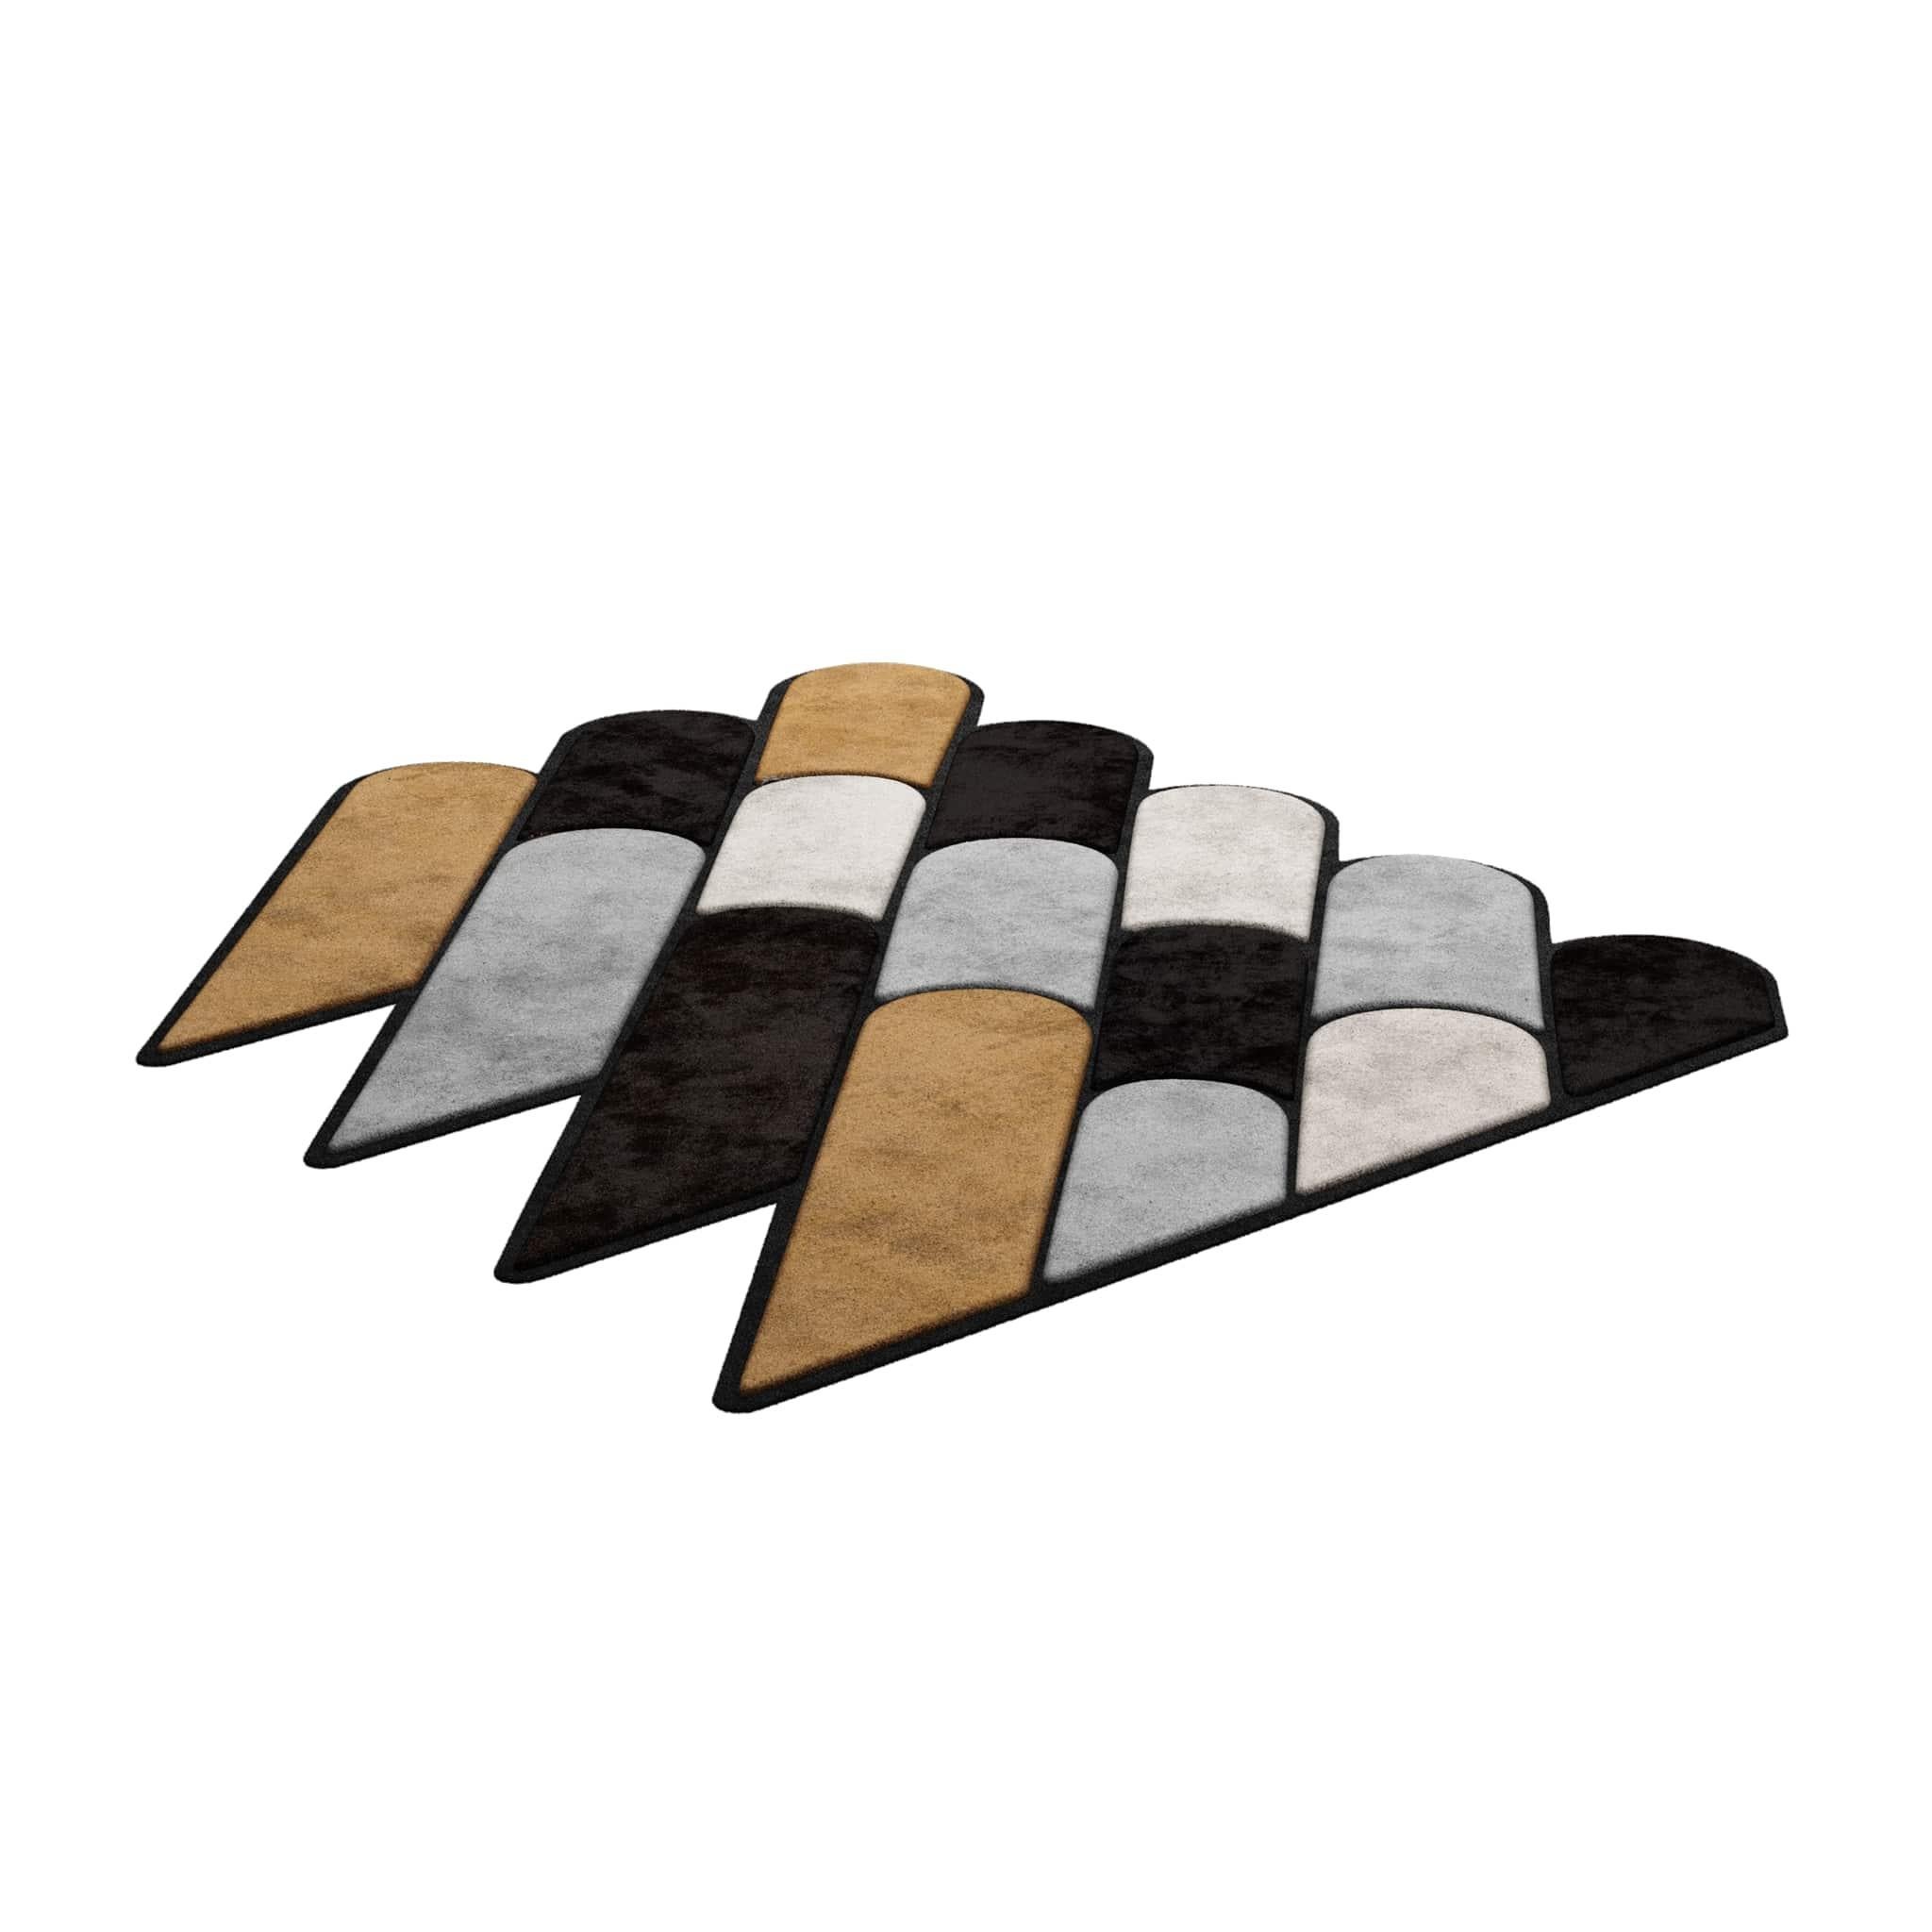 TAPIS Shaped #009 ist ein eklektischer Teppich, der das Flair der Mitte des Jahrhunderts mit dem Stil der Postmoderne verbindet. Dieser Teppich ist handgetuftet und besteht aus 100% botanischer Seide mit einer Dicke von 16 mm. Erhältlich in den